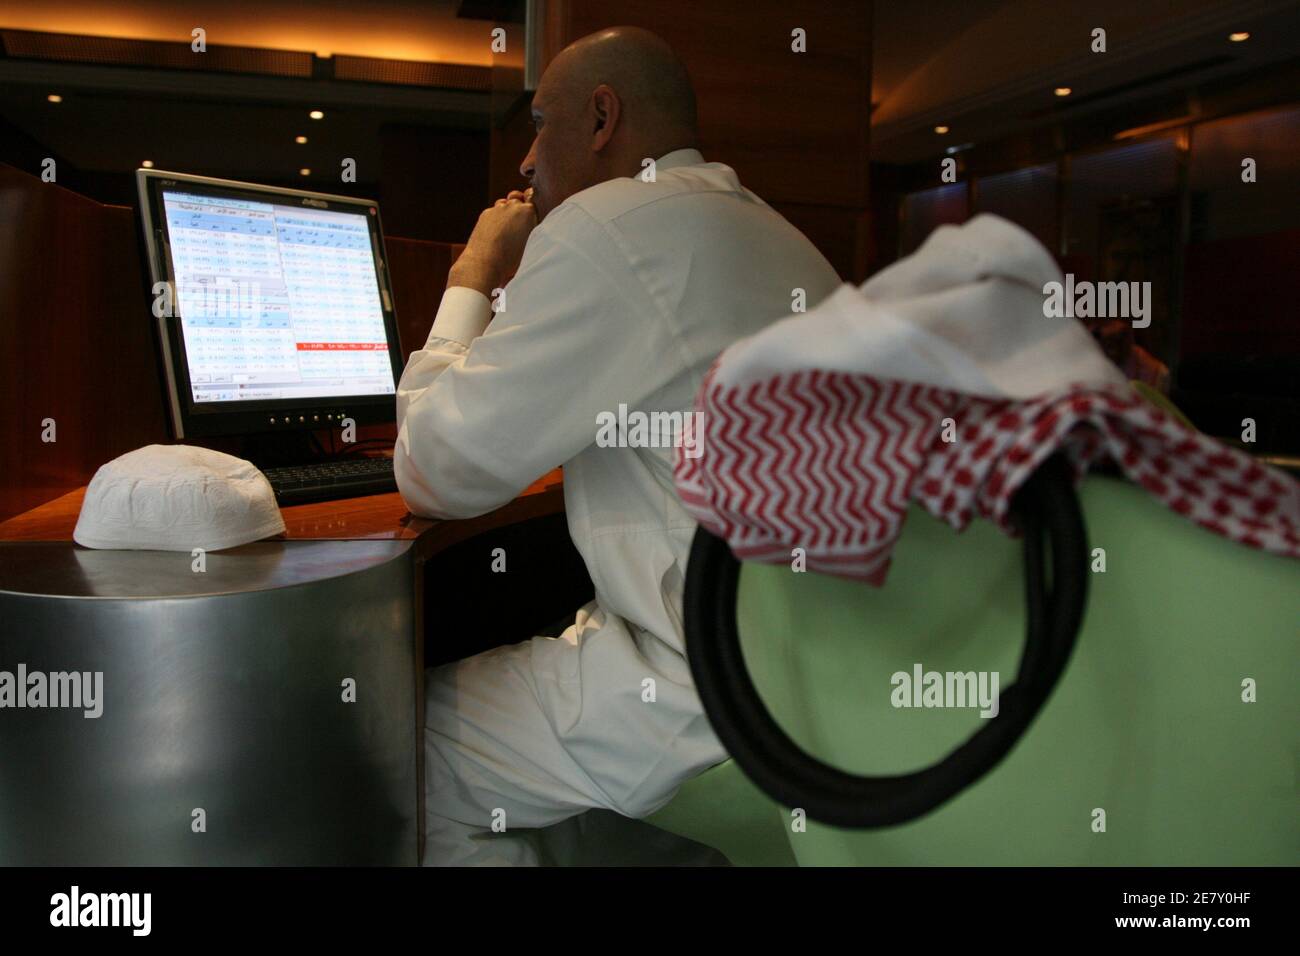 Un trader Saudita lavora presso la Saudi Investment Bank di Riyadh il 18 marzo 2008. Le autorità saudite speravano che incoraggiare la partecipazione di massa alla proprietà delle azioni avrebbe aiutato a distribuire la ricchezza derivante dall’attuale boom petrolifero con l’impennata dei prezzi mondiali. Ma un crollo del mercato azionario nel 2006 e un aumento dell’inflazione negli ultimi mesi hanno diffuso un’atmosfera di oscurità tra i sauditi ordinari. REUTERS/Fahad Shadeed (ARABIA SAUDITA) Foto Stock